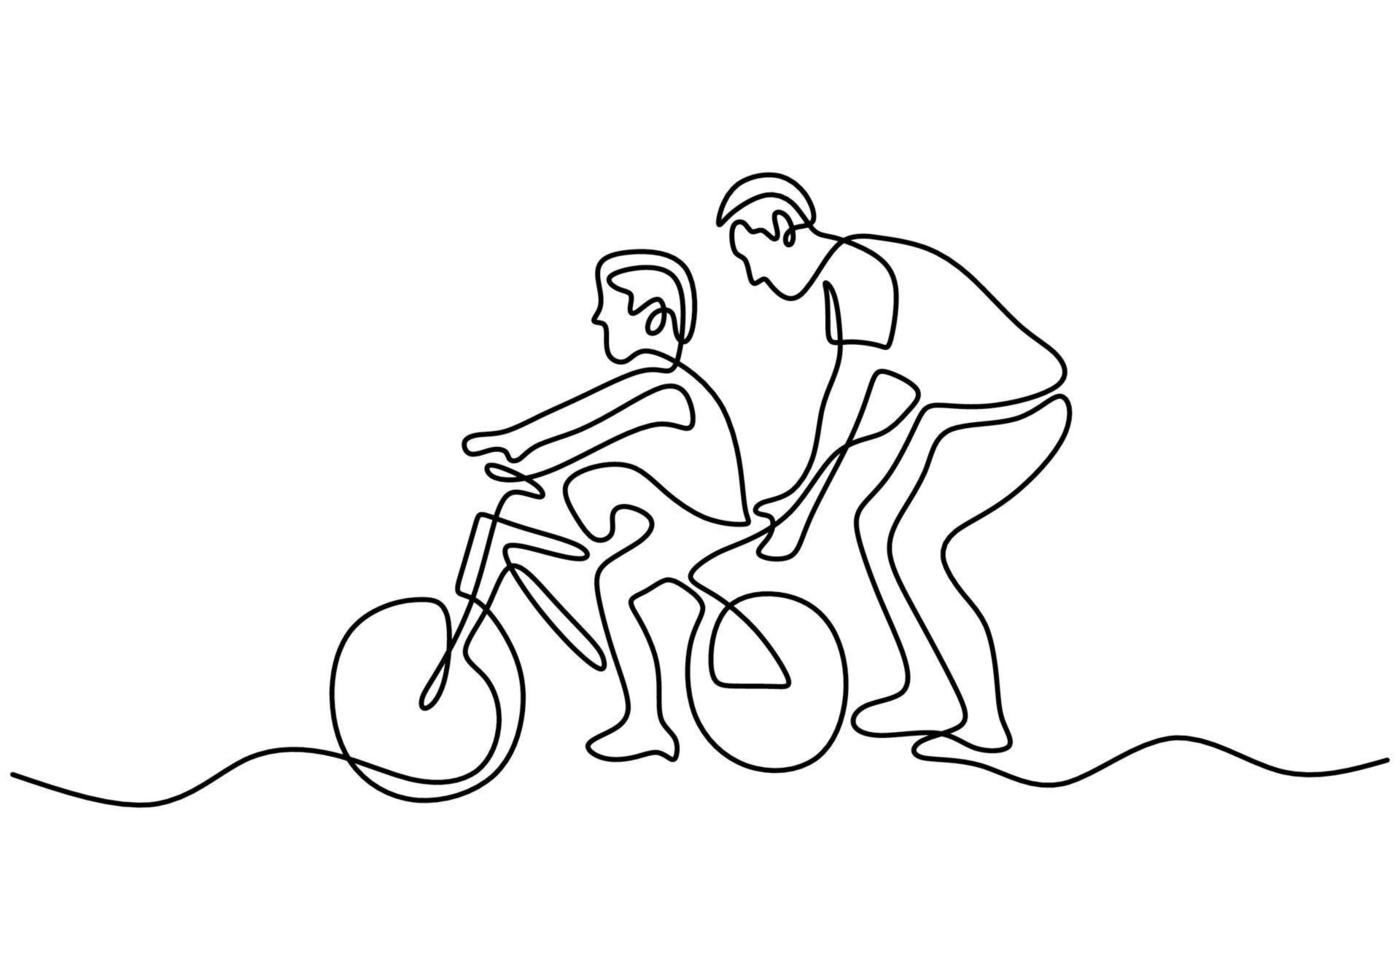 continu een enkele lijntekening van de jonge vader die zijn zoon helpt samen te leren fietsen in het veld. gelukkig ouderschap concept. karakter vader leert zijn zoon fietsen vector